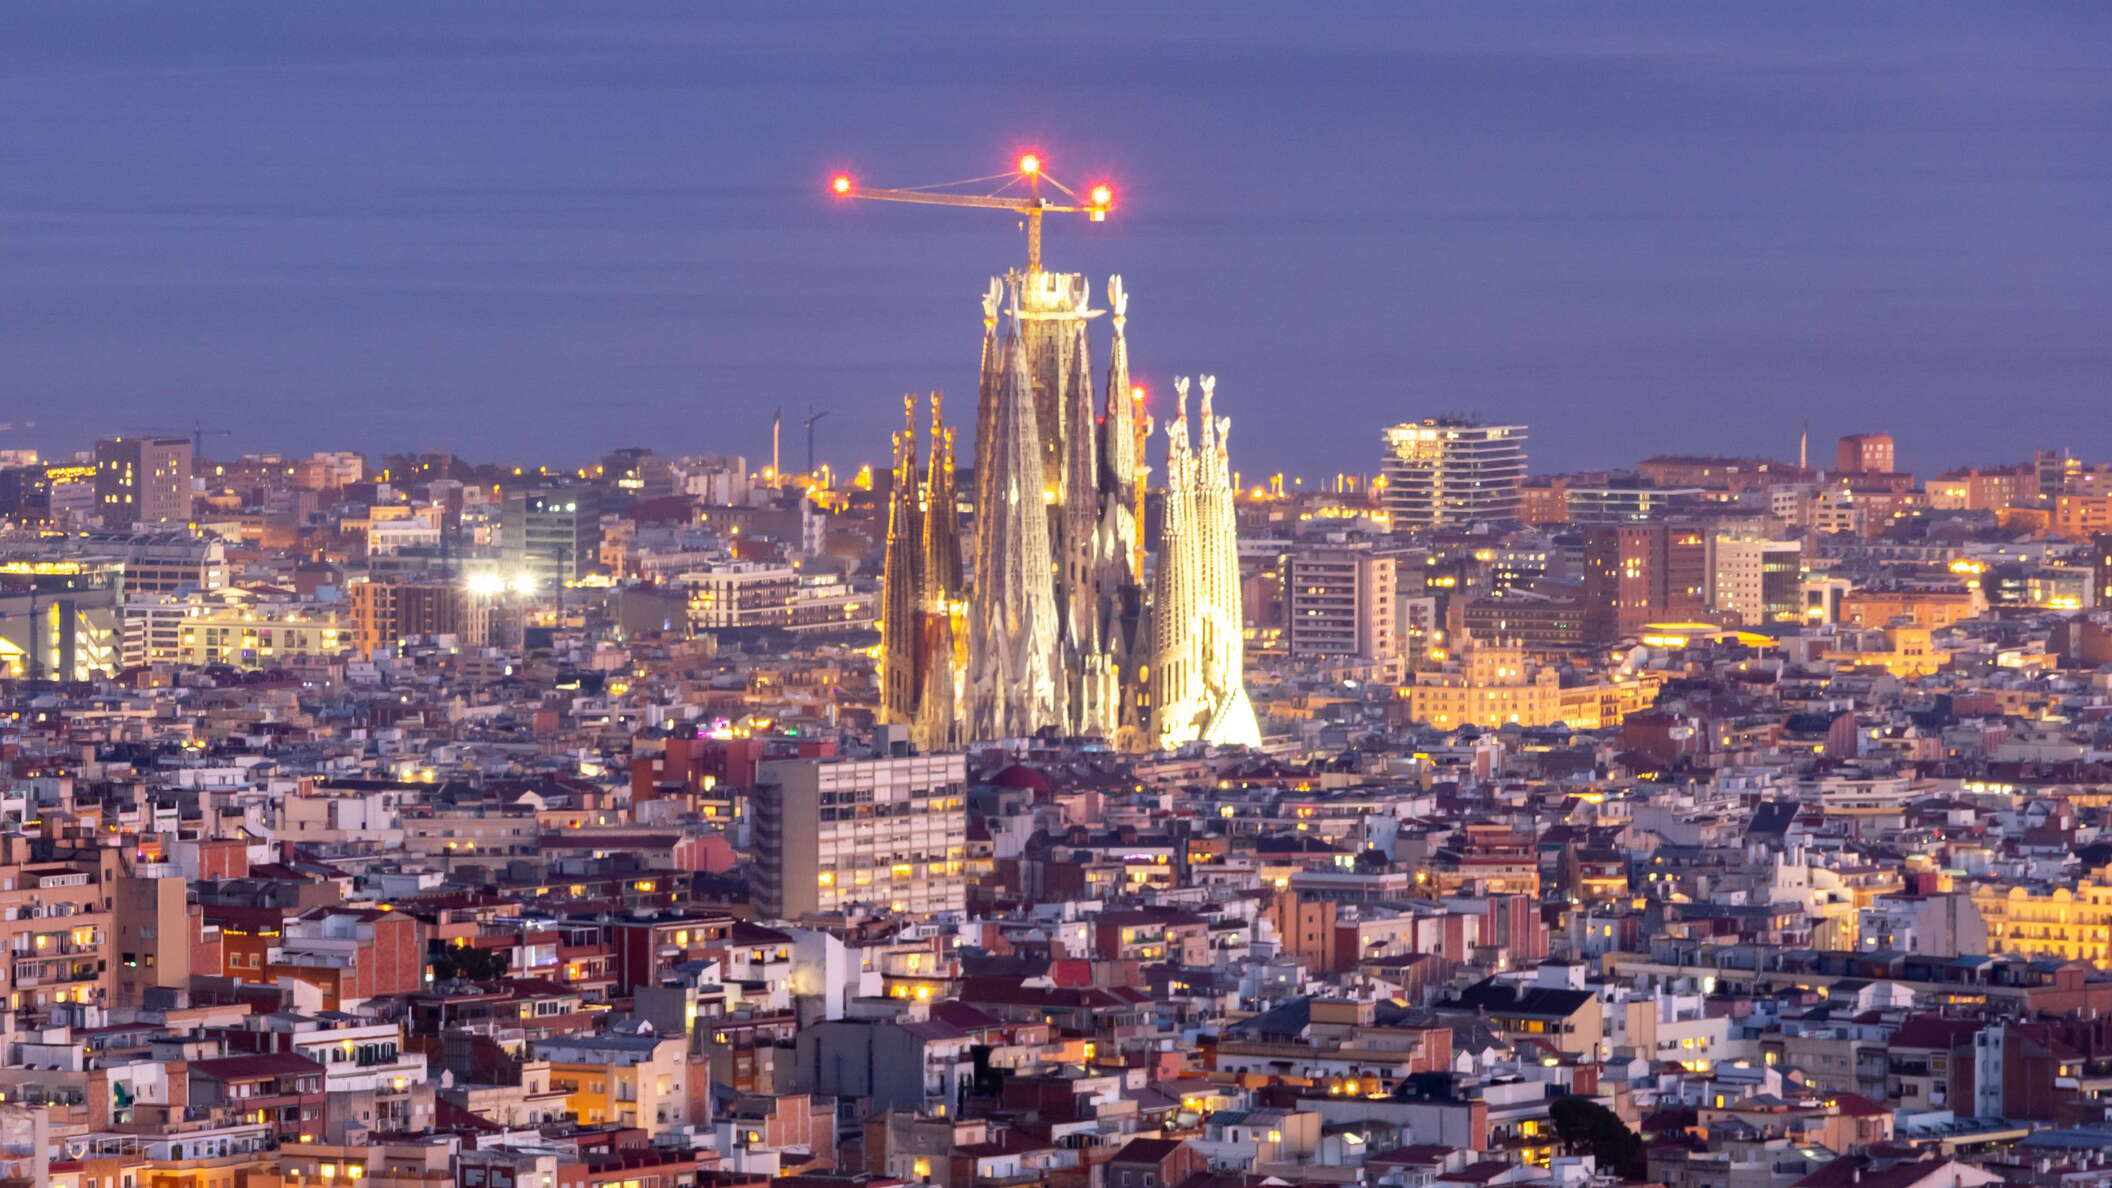 Barcelona | Sagrada Família at night